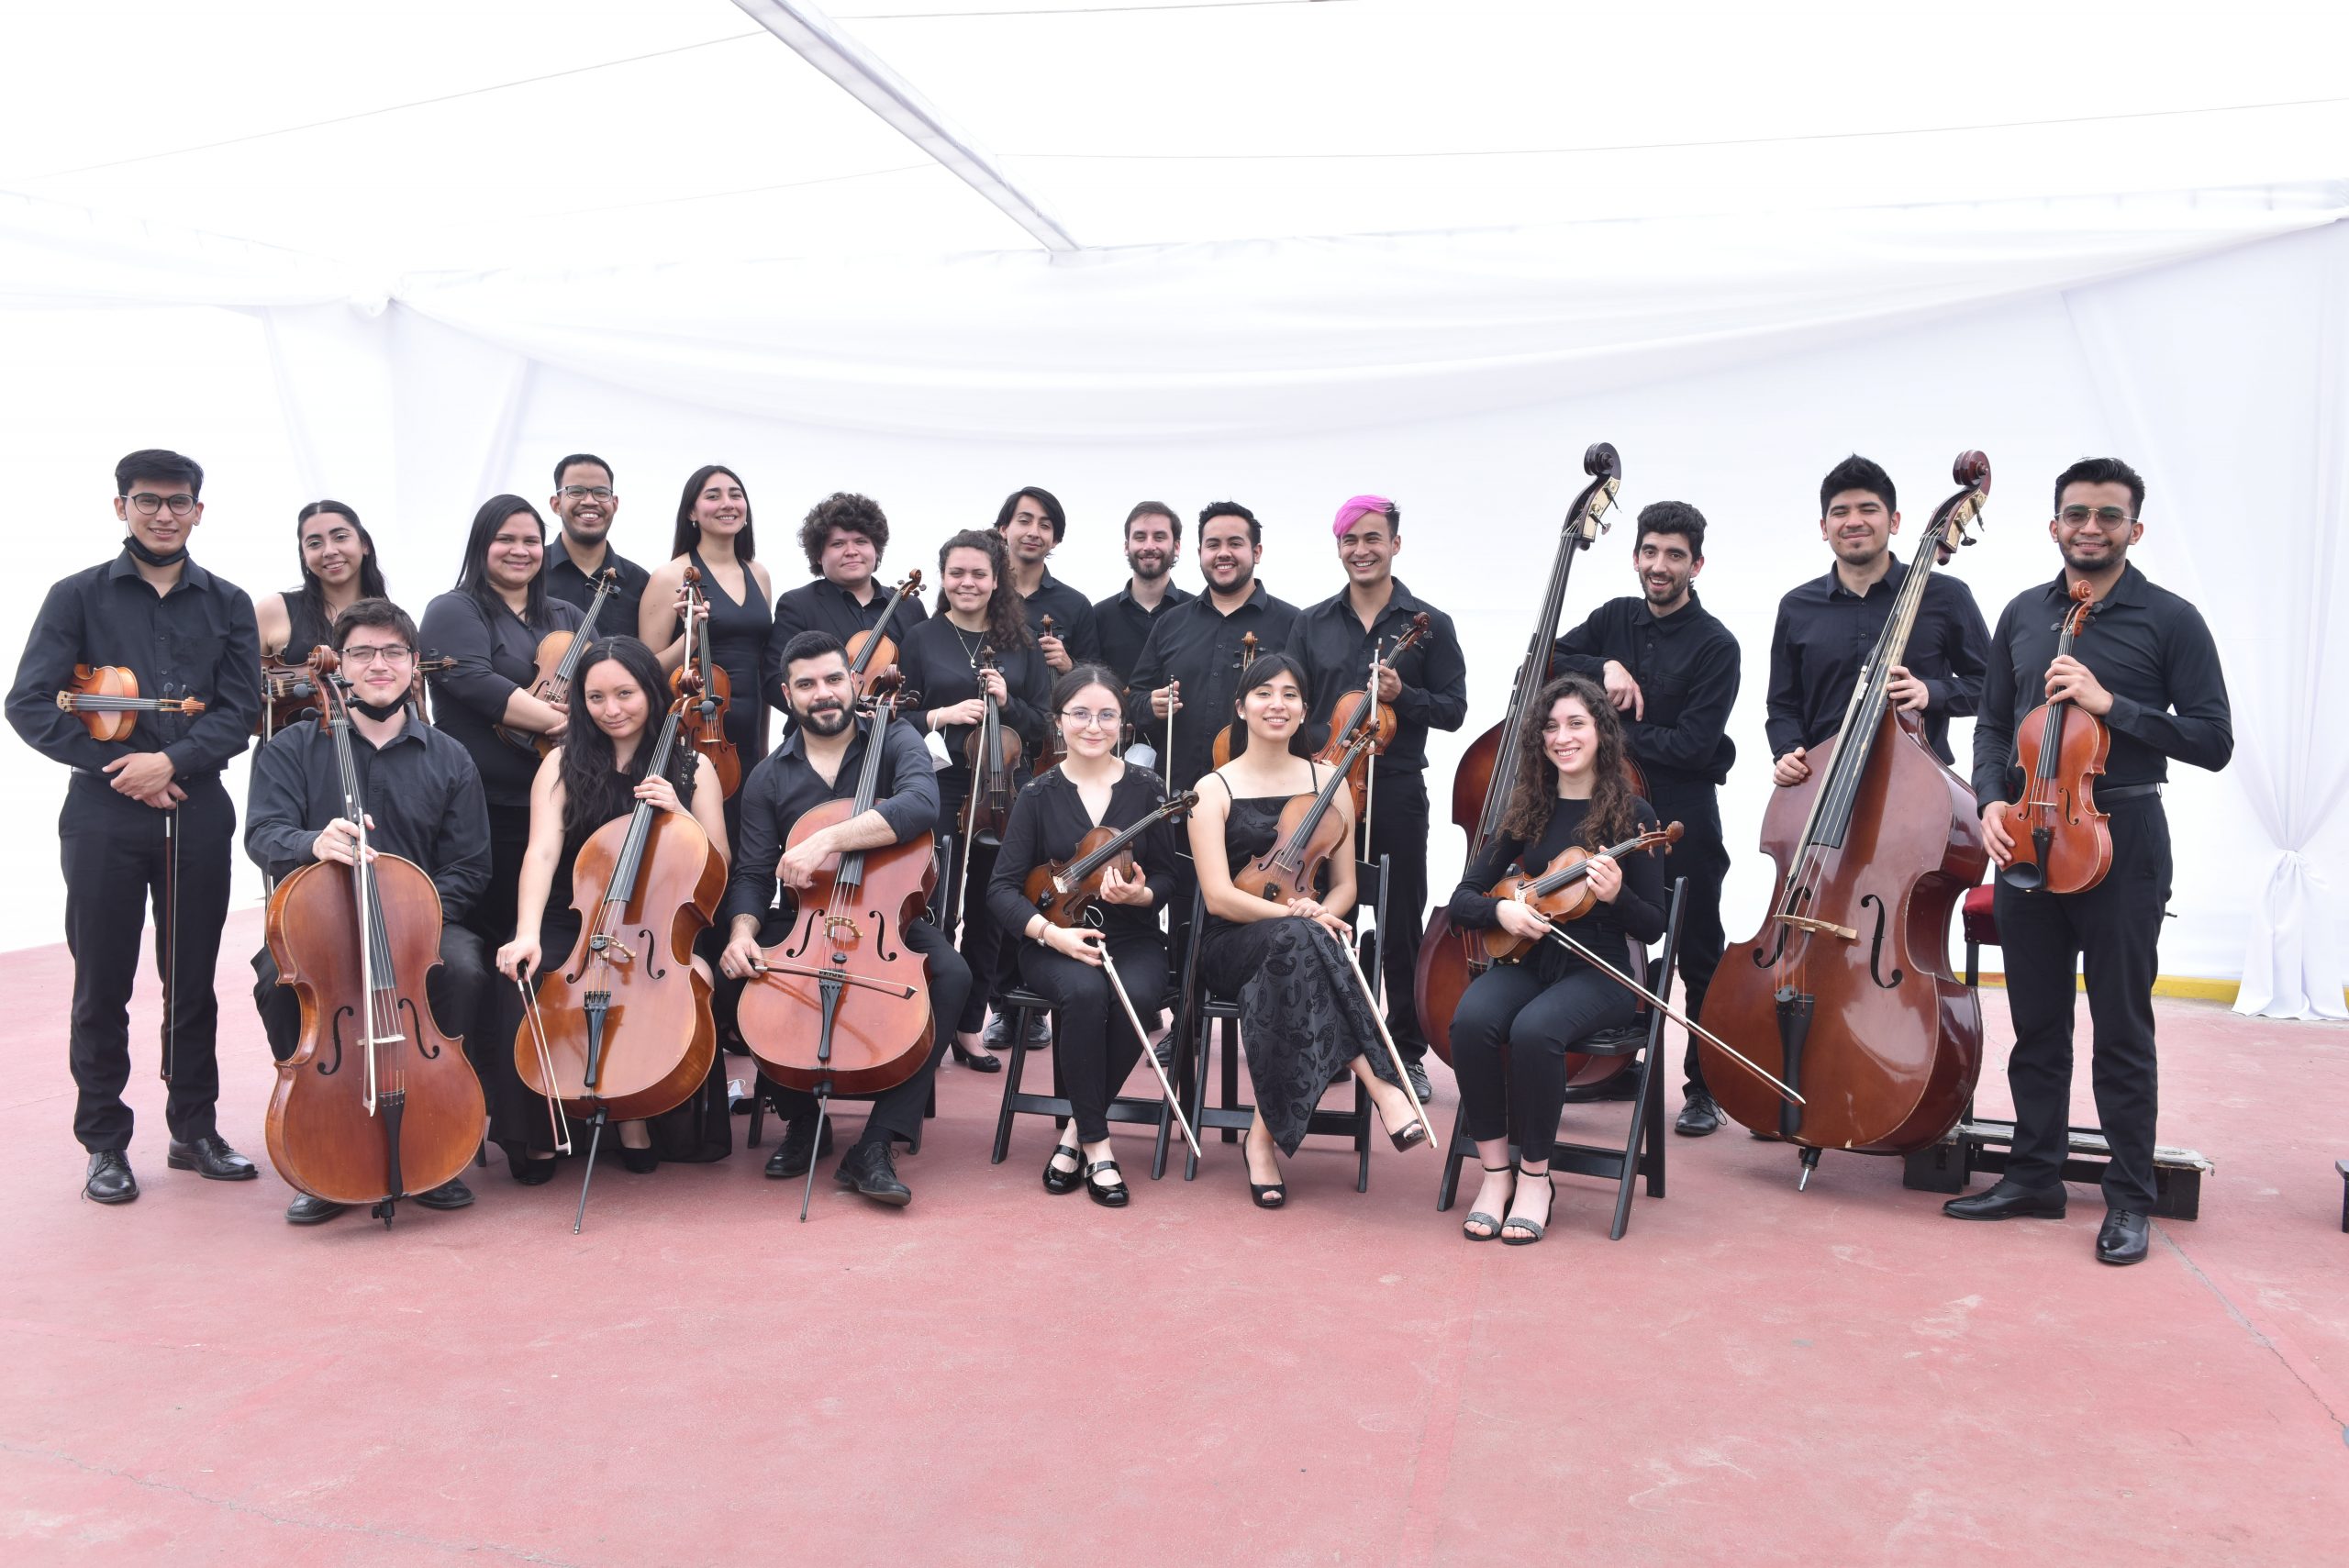 Gira regional del Teatro Municipal de Santiago hará su primera parada en Puerto Natales con concierto de cámara